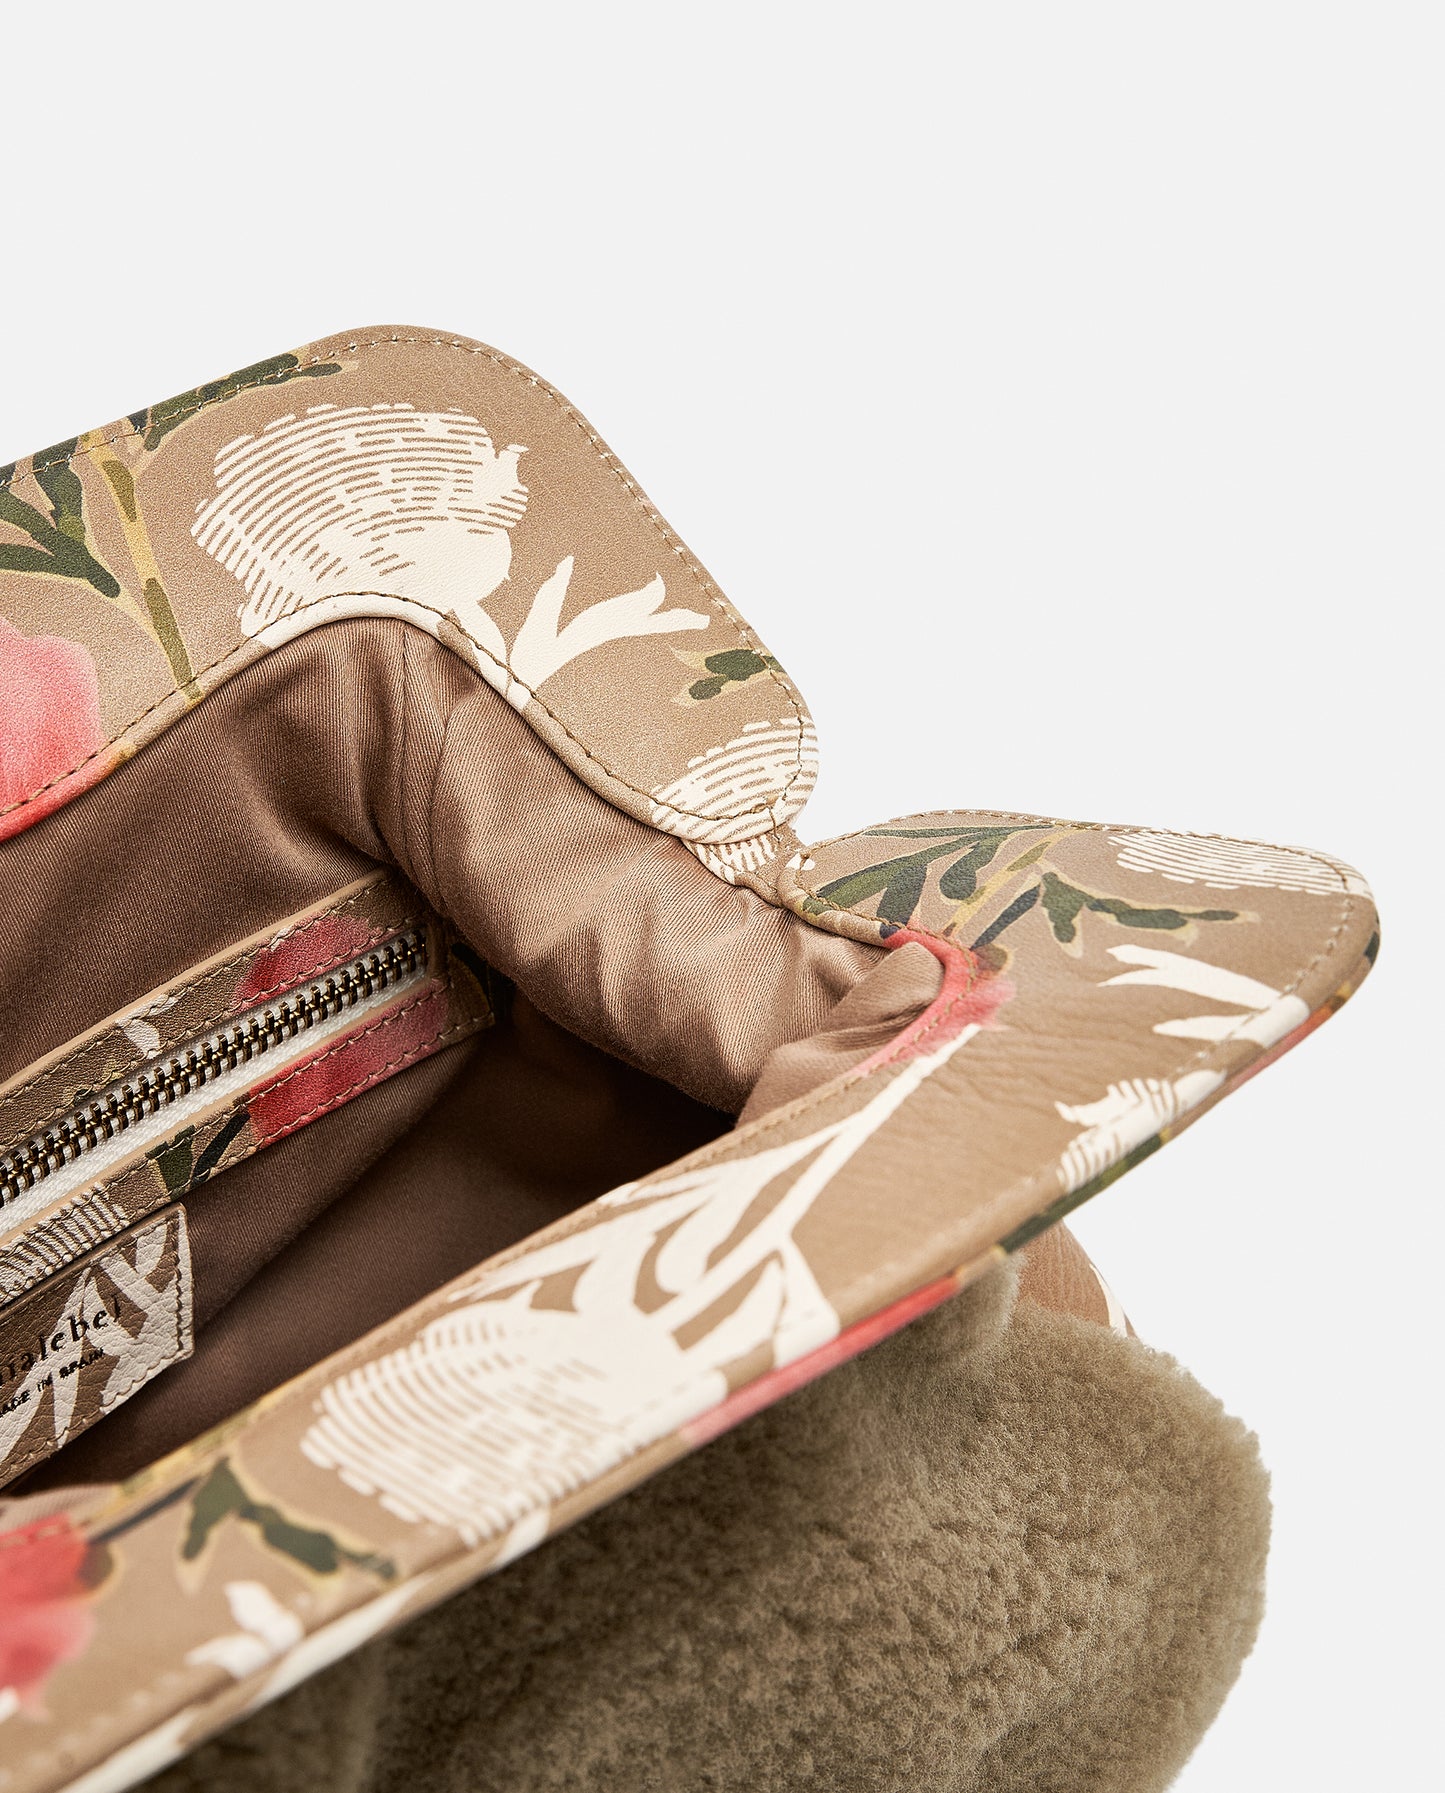 Detalles florales en la solapa de un bolso borreguito marrón